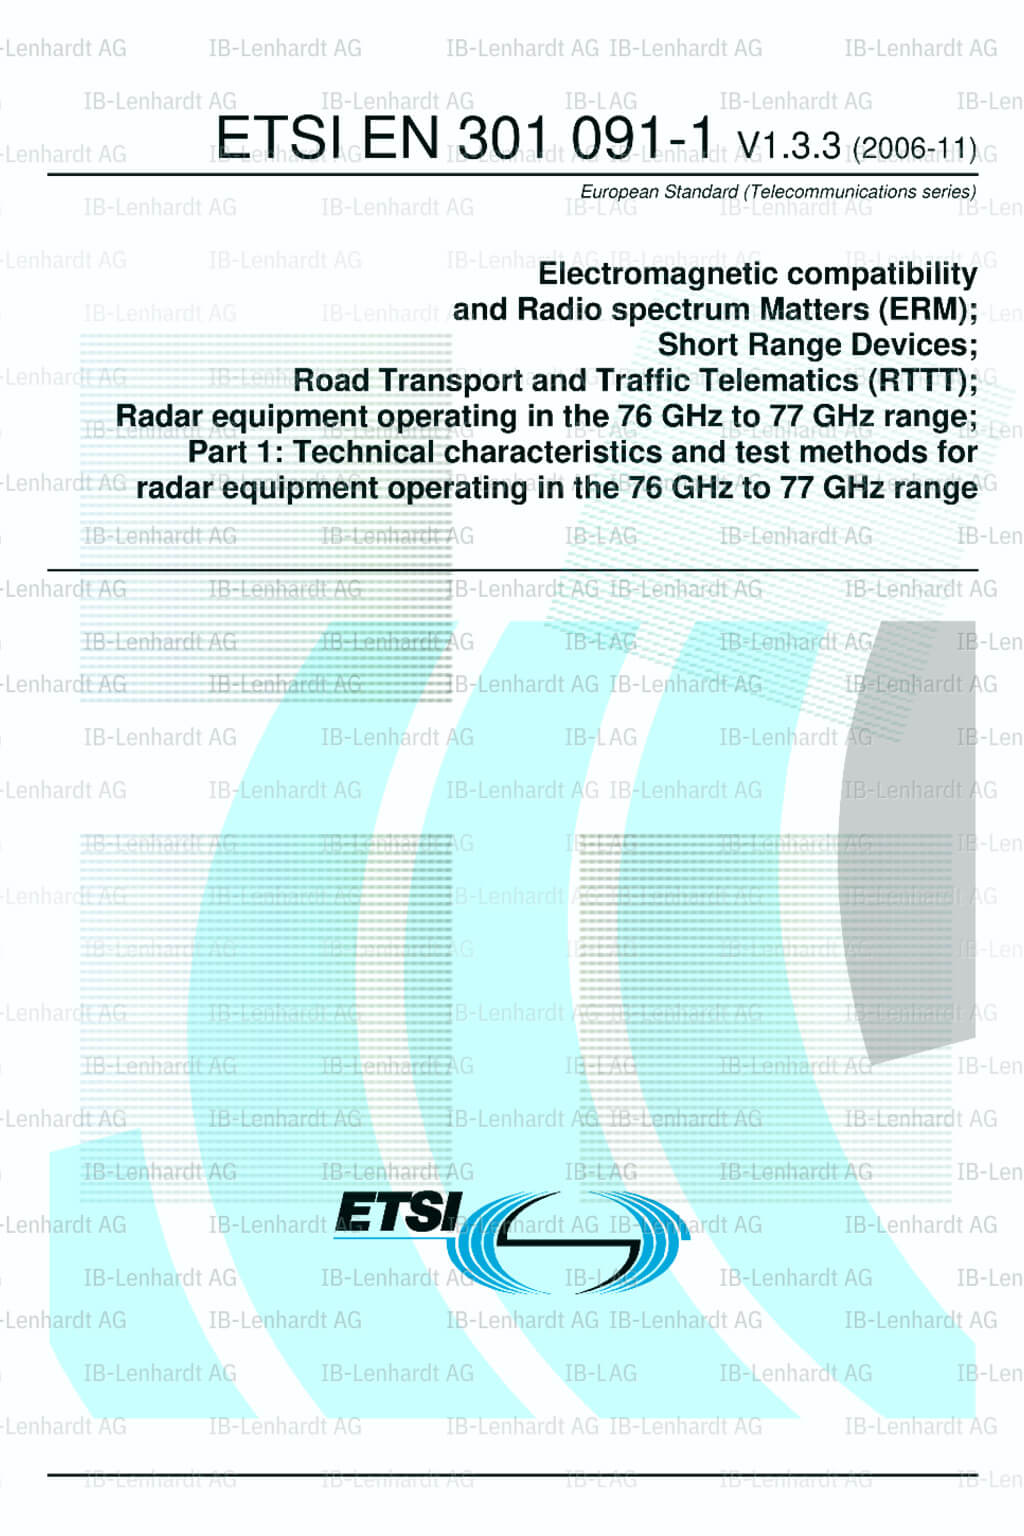 ETSI EN 301 091-1 V1.3.3